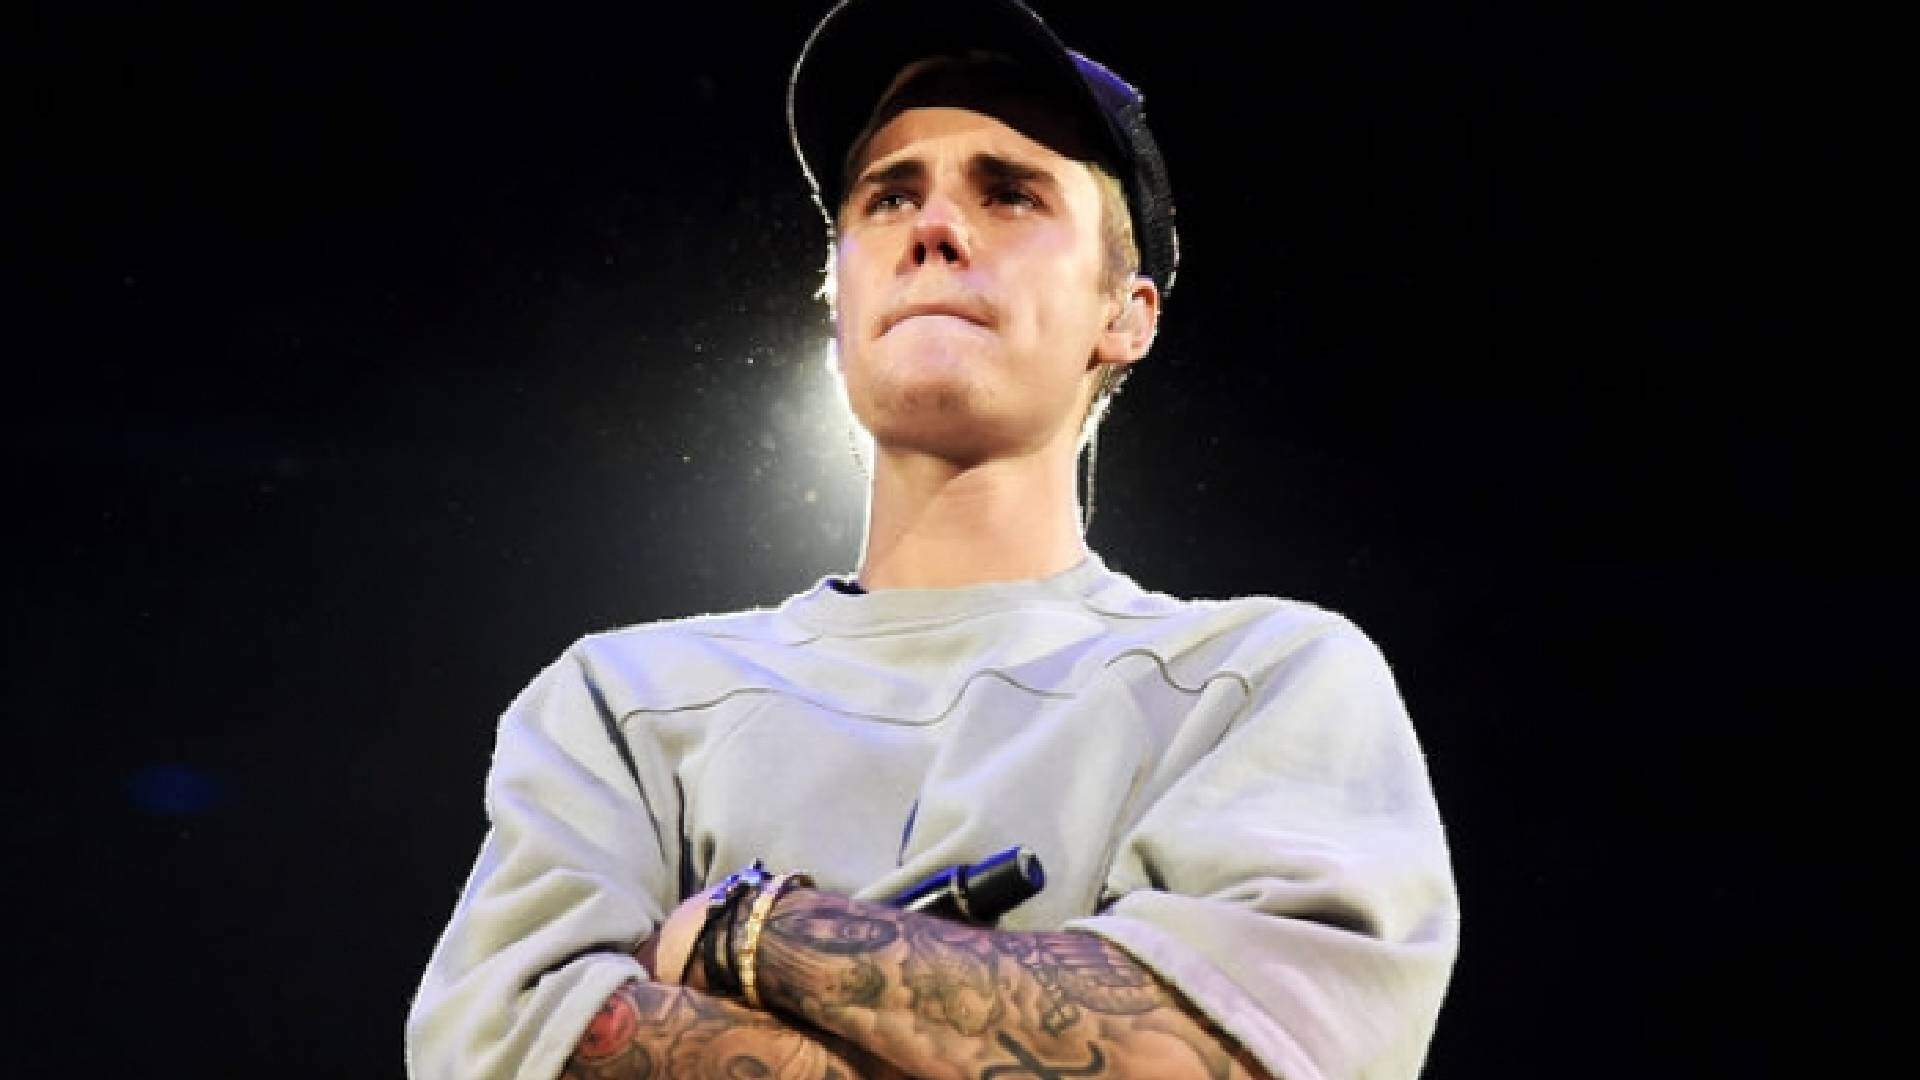 Justin Bieber deixa fãs preocupados com anúncio inesperado: “Não acredito que estou dizendo isso” - Metropolitana FM